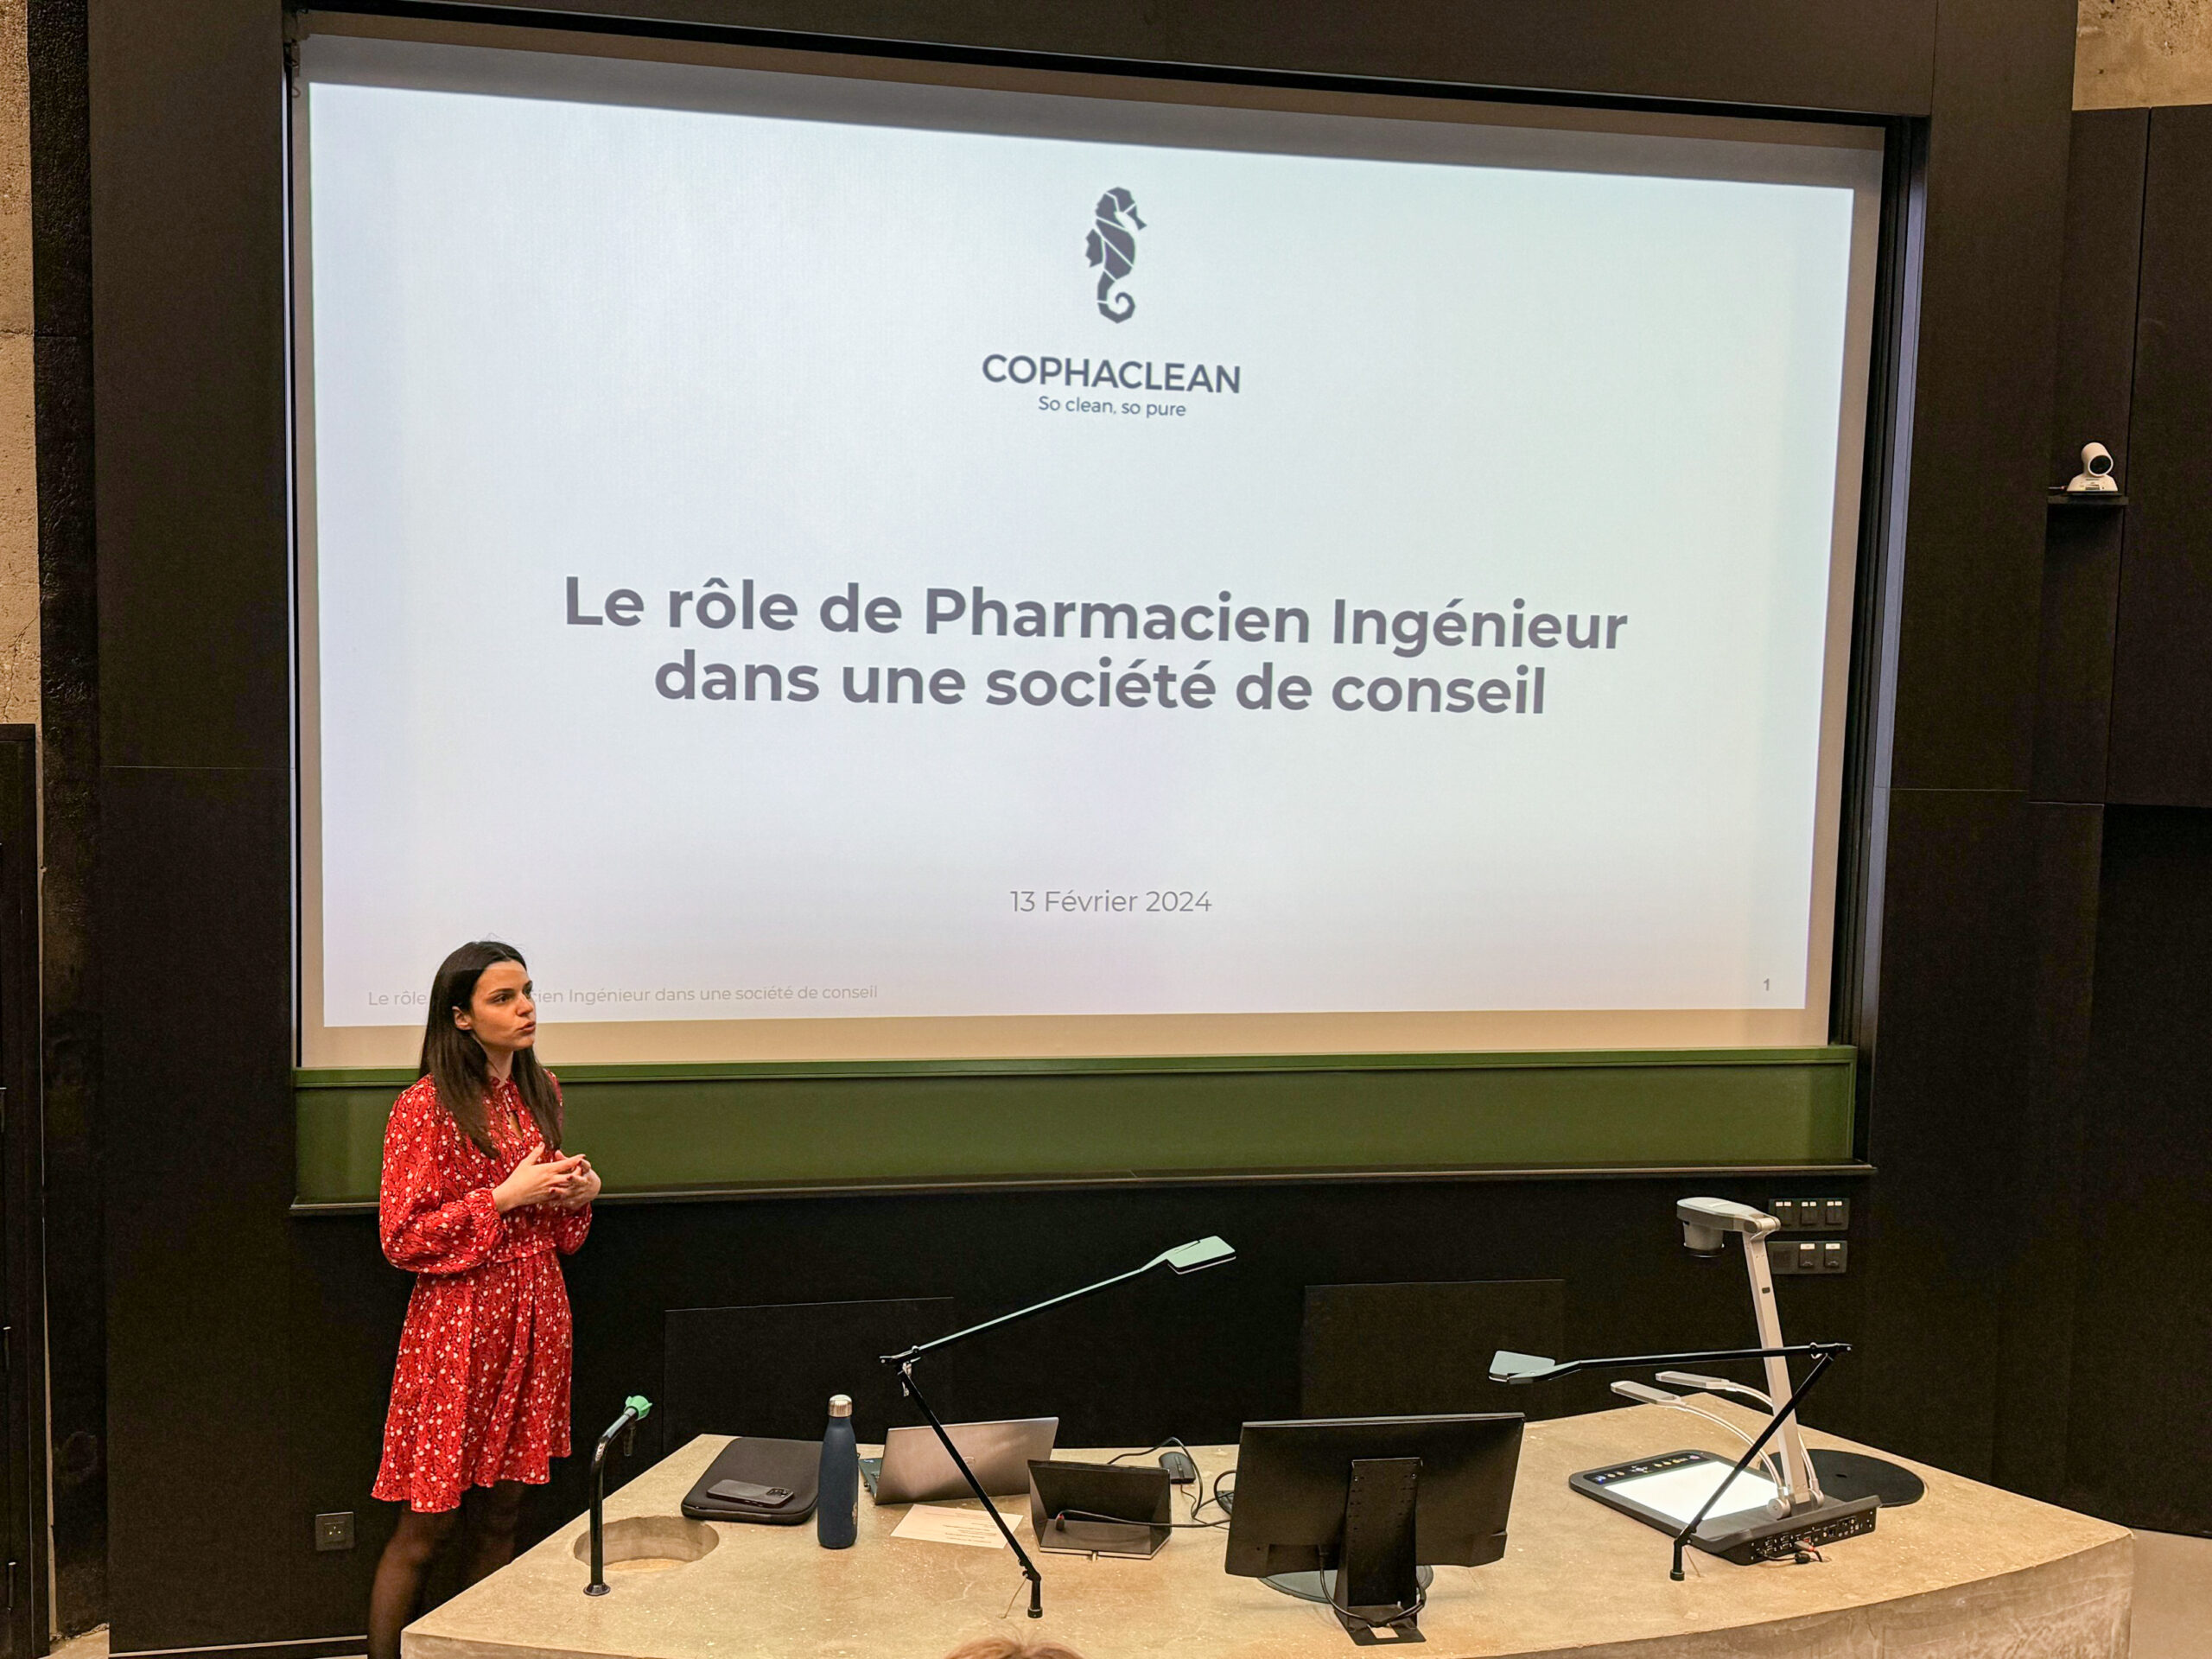 La conférence sur le rôle du Pharmacien Ingénieur